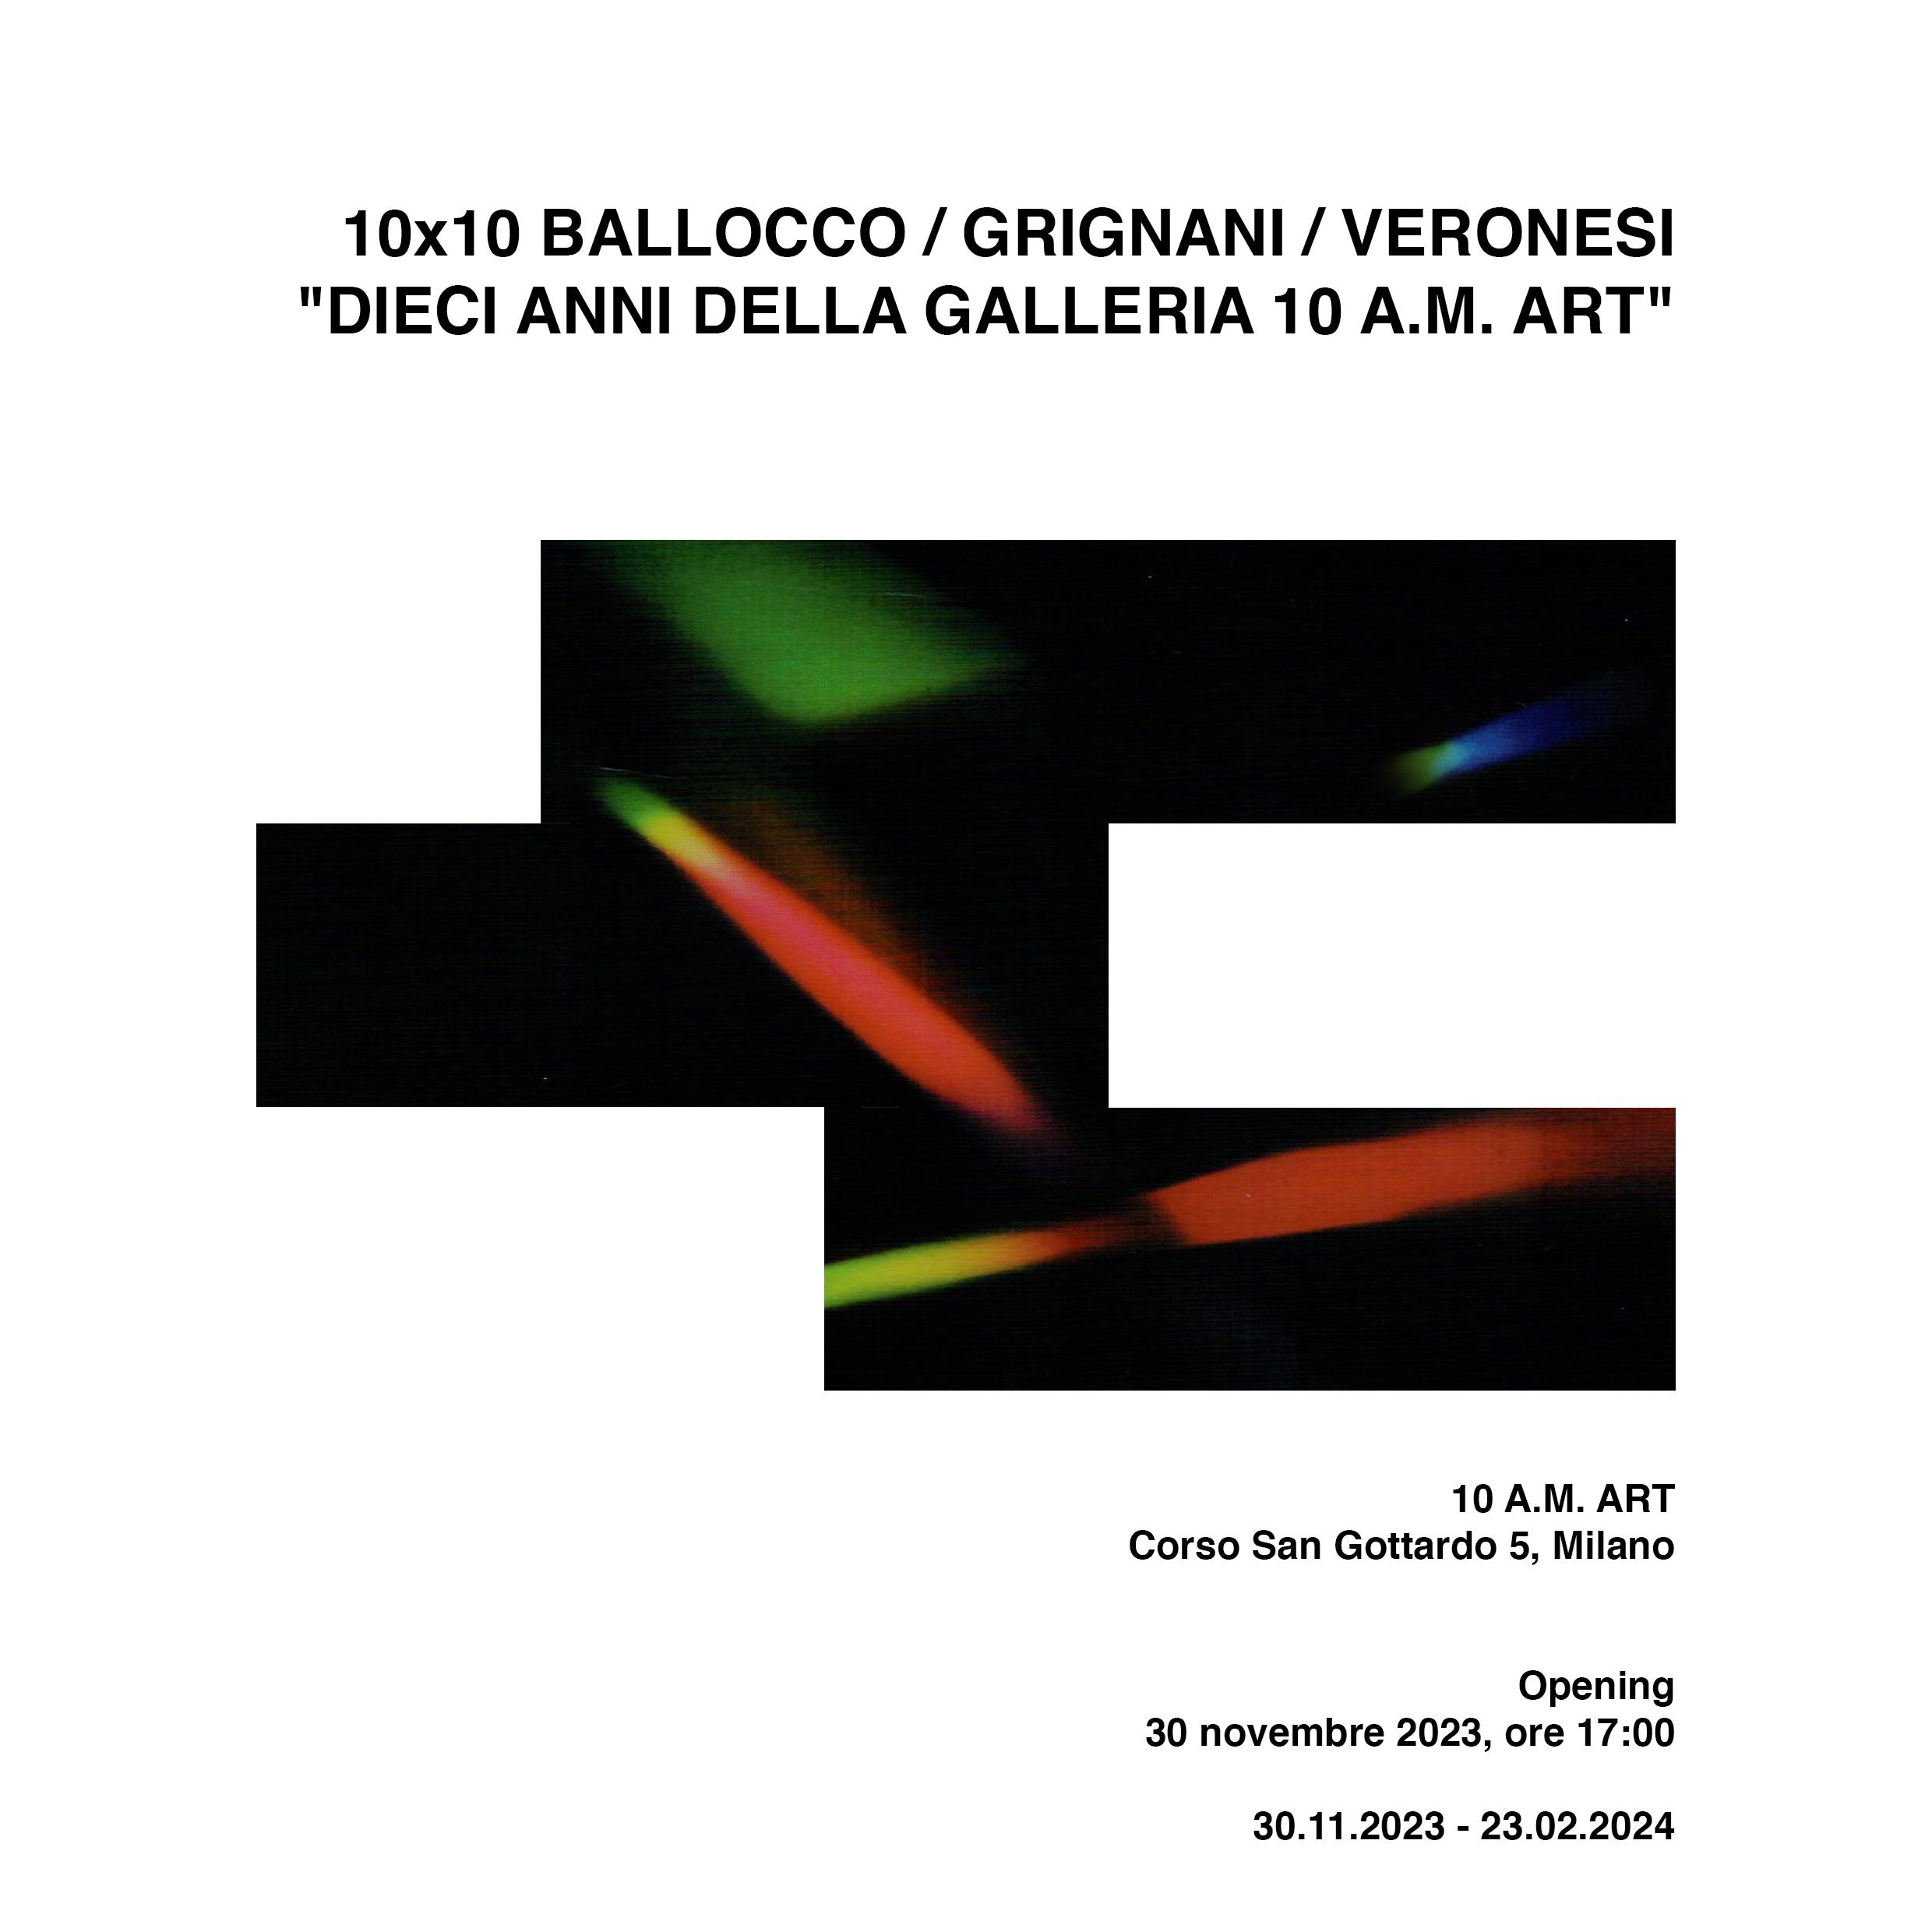 10x10 Ballocco / Grignani / Veronesi. Dieci anni della galleria 10 A.M. ART